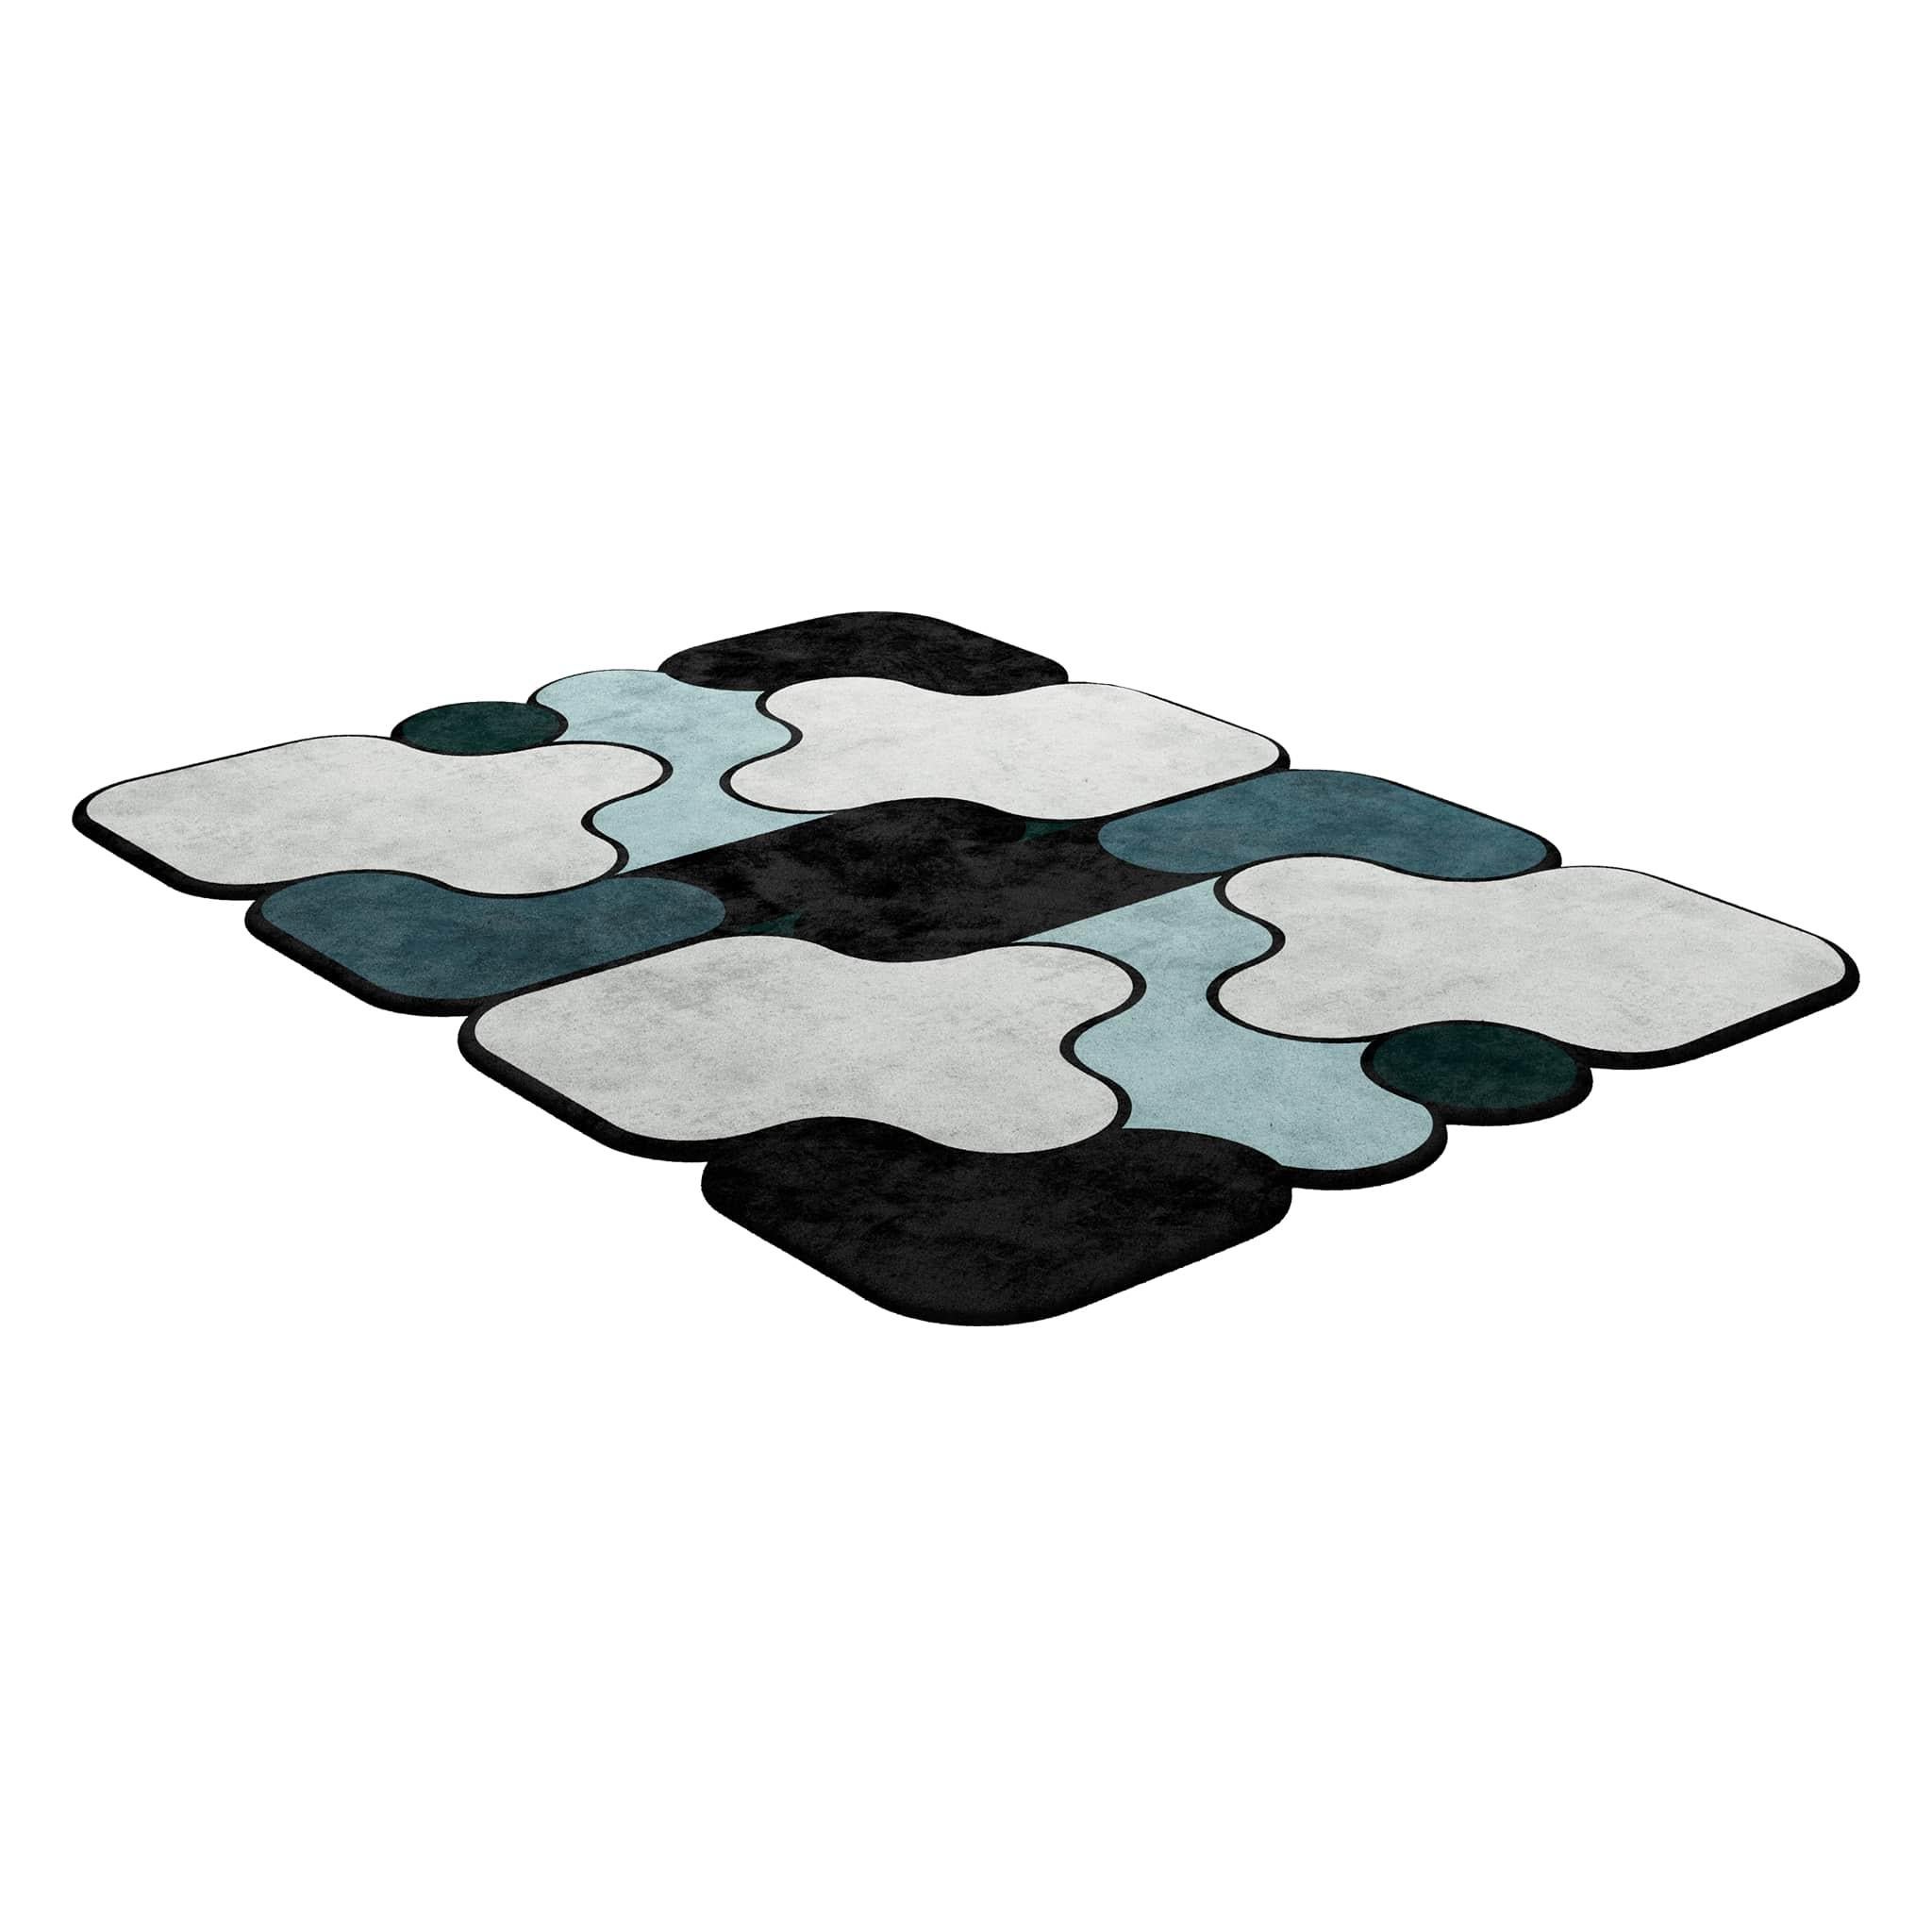 TAPIS Shaped #028 ist ein eklektischer Teppich, der das Flair der Mitte des Jahrhunderts mit dem Stil der Postmoderne verbindet. Dieser Teppich ist handgetuftet und besteht aus 100% botanischer Seide mit einer Dicke von 16 mm. Erhältlich in den